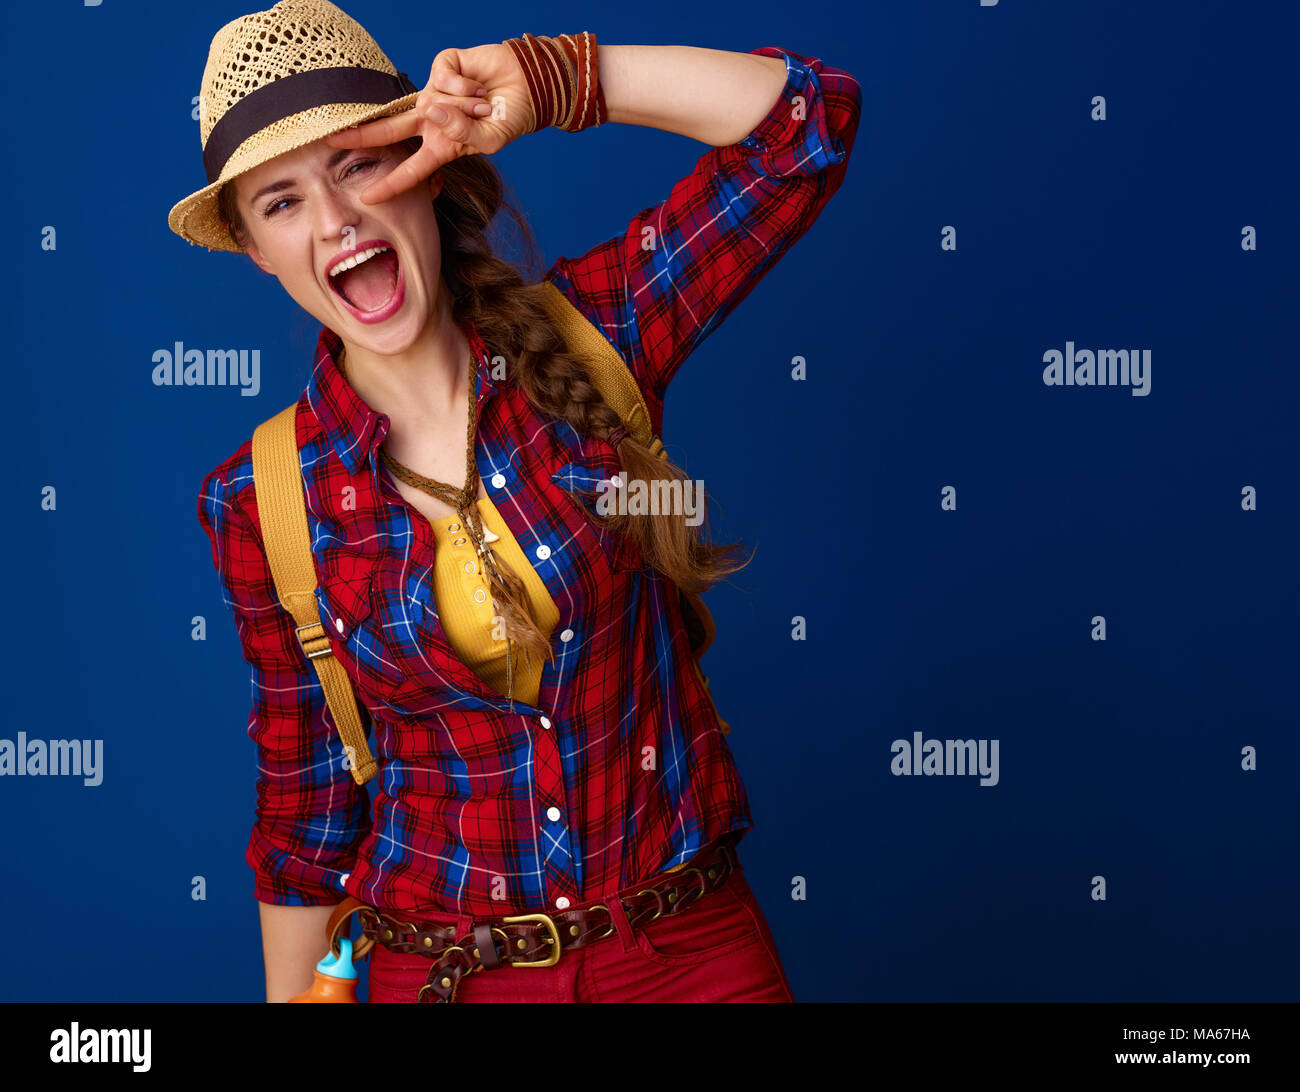 Auf der Suche nach inspirierenden Orten. glückliche junge Frau Wanderer in einen Plaid Shirt, Sieg Geste vor blauem Hintergrund Stockfoto